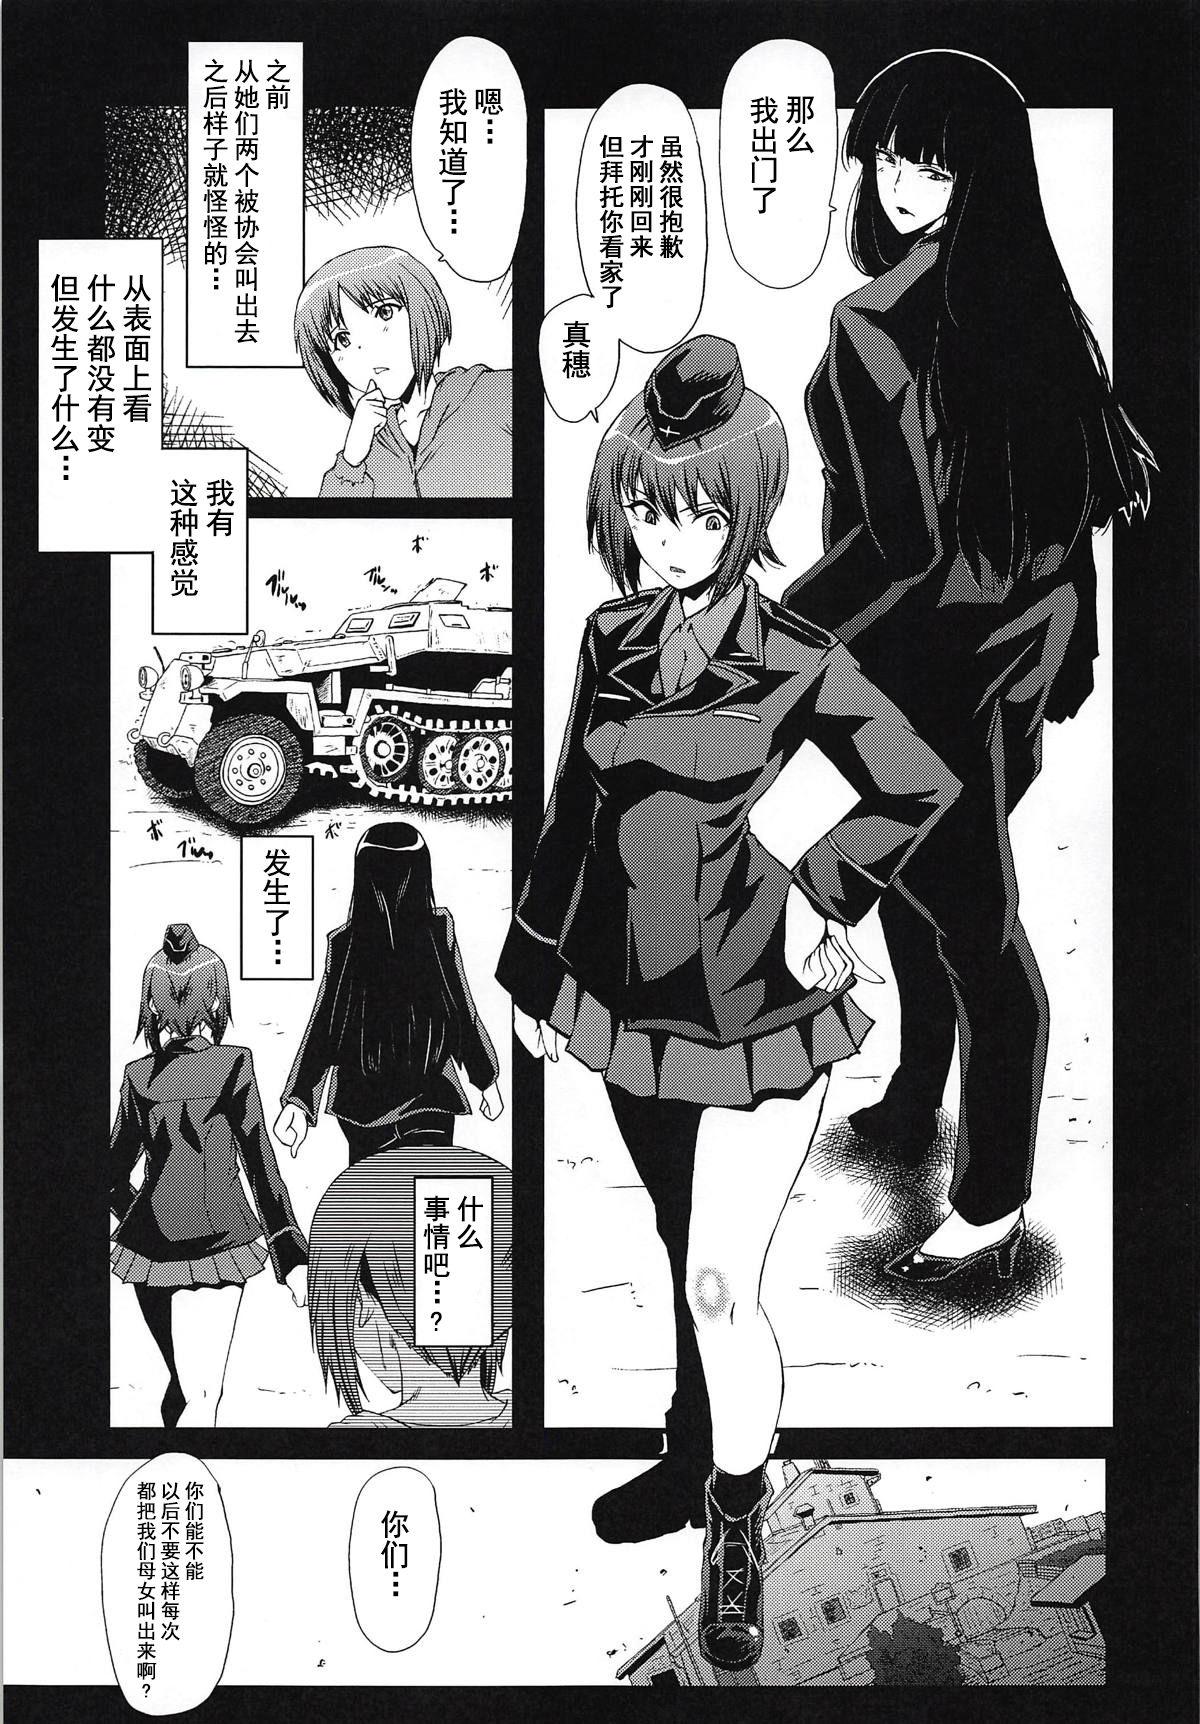 Nurugel Urabambi Vol. 57 Taihai no Koutetsu Fujin - Girls und panzer Jock - Page 4